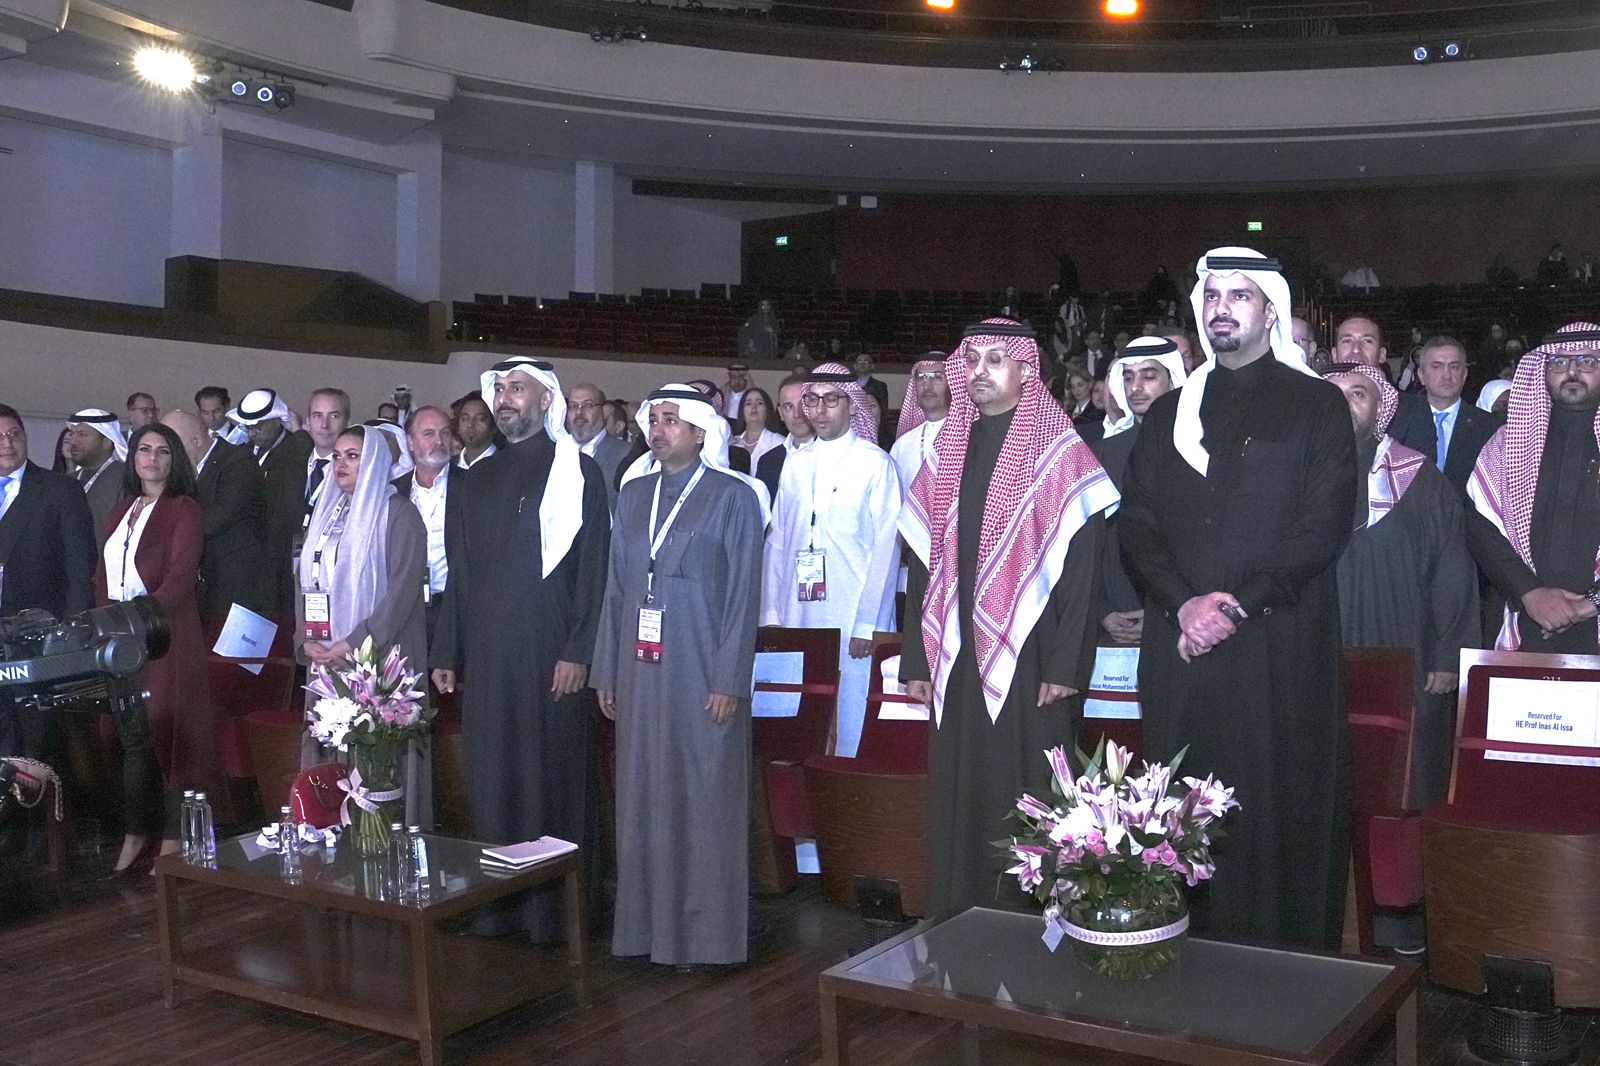 منتدى قادة الأعمال يفتتح جلساته بجامعة الأميرة نورة بنت عبدالرحمن